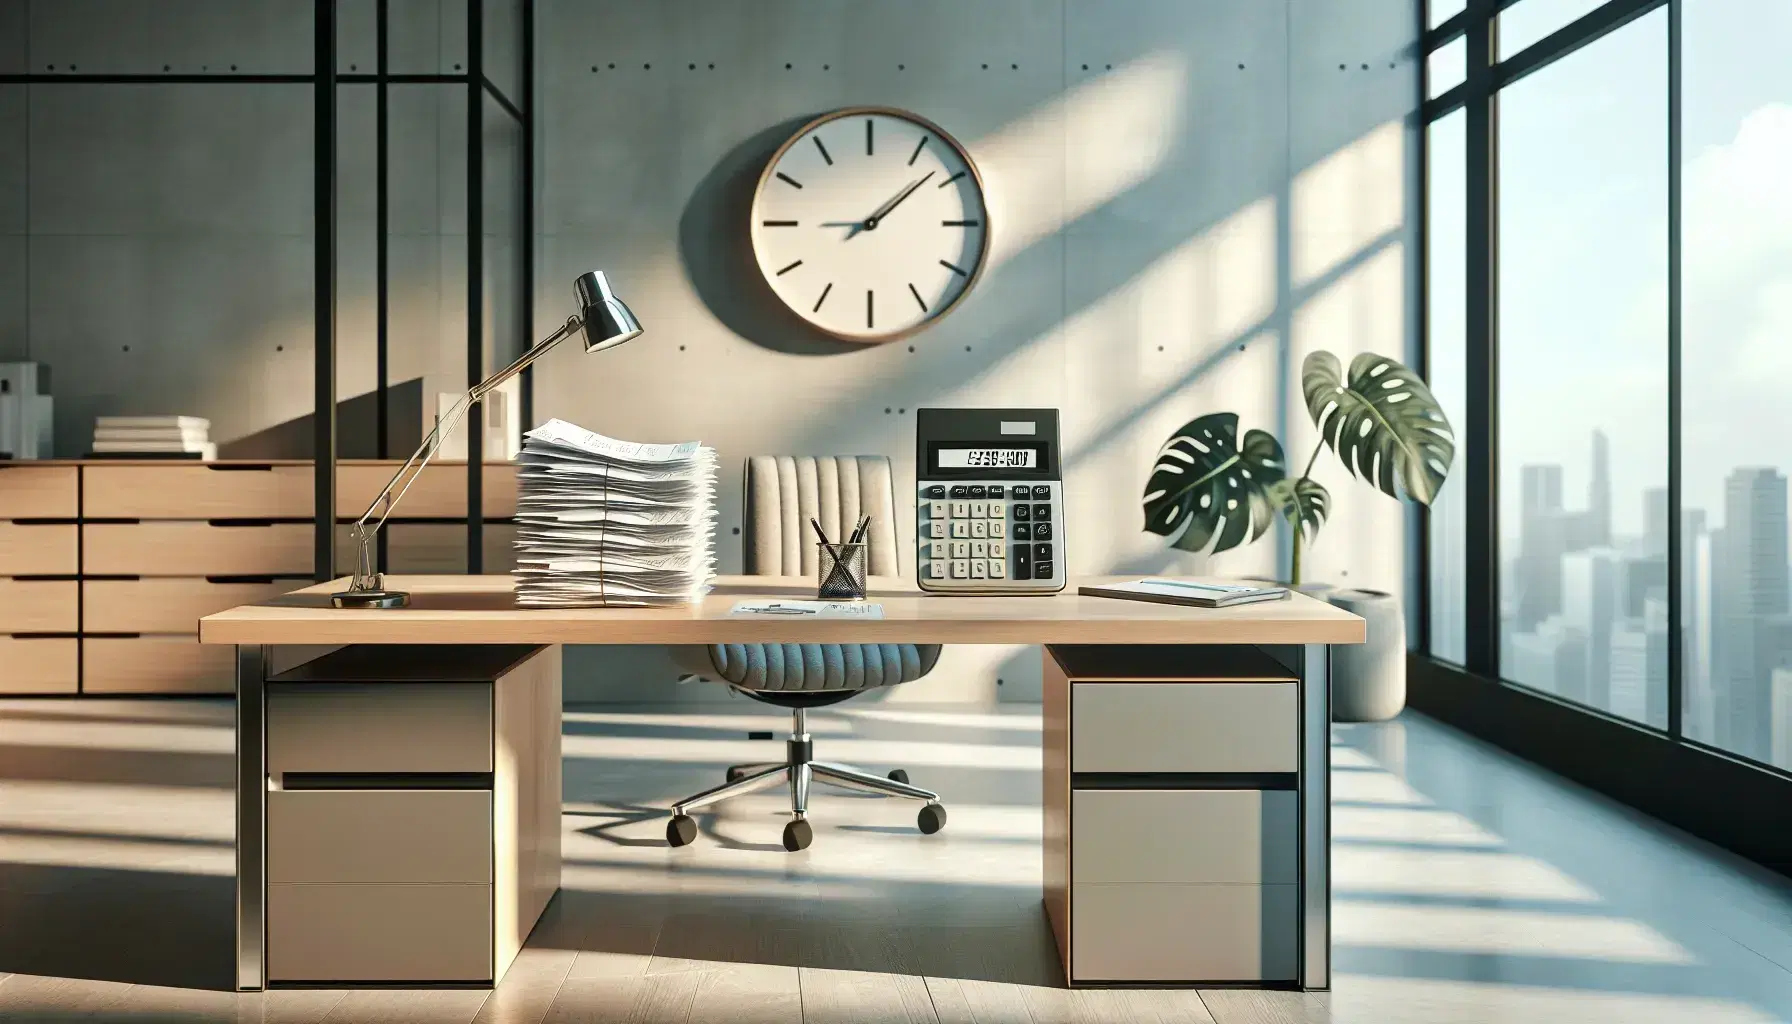 Oficina moderna y luminosa con escritorio de madera, calculadora negra, recibos, silla ergonómica gris y reloj analógico en la pared, junto a planta interior verde.